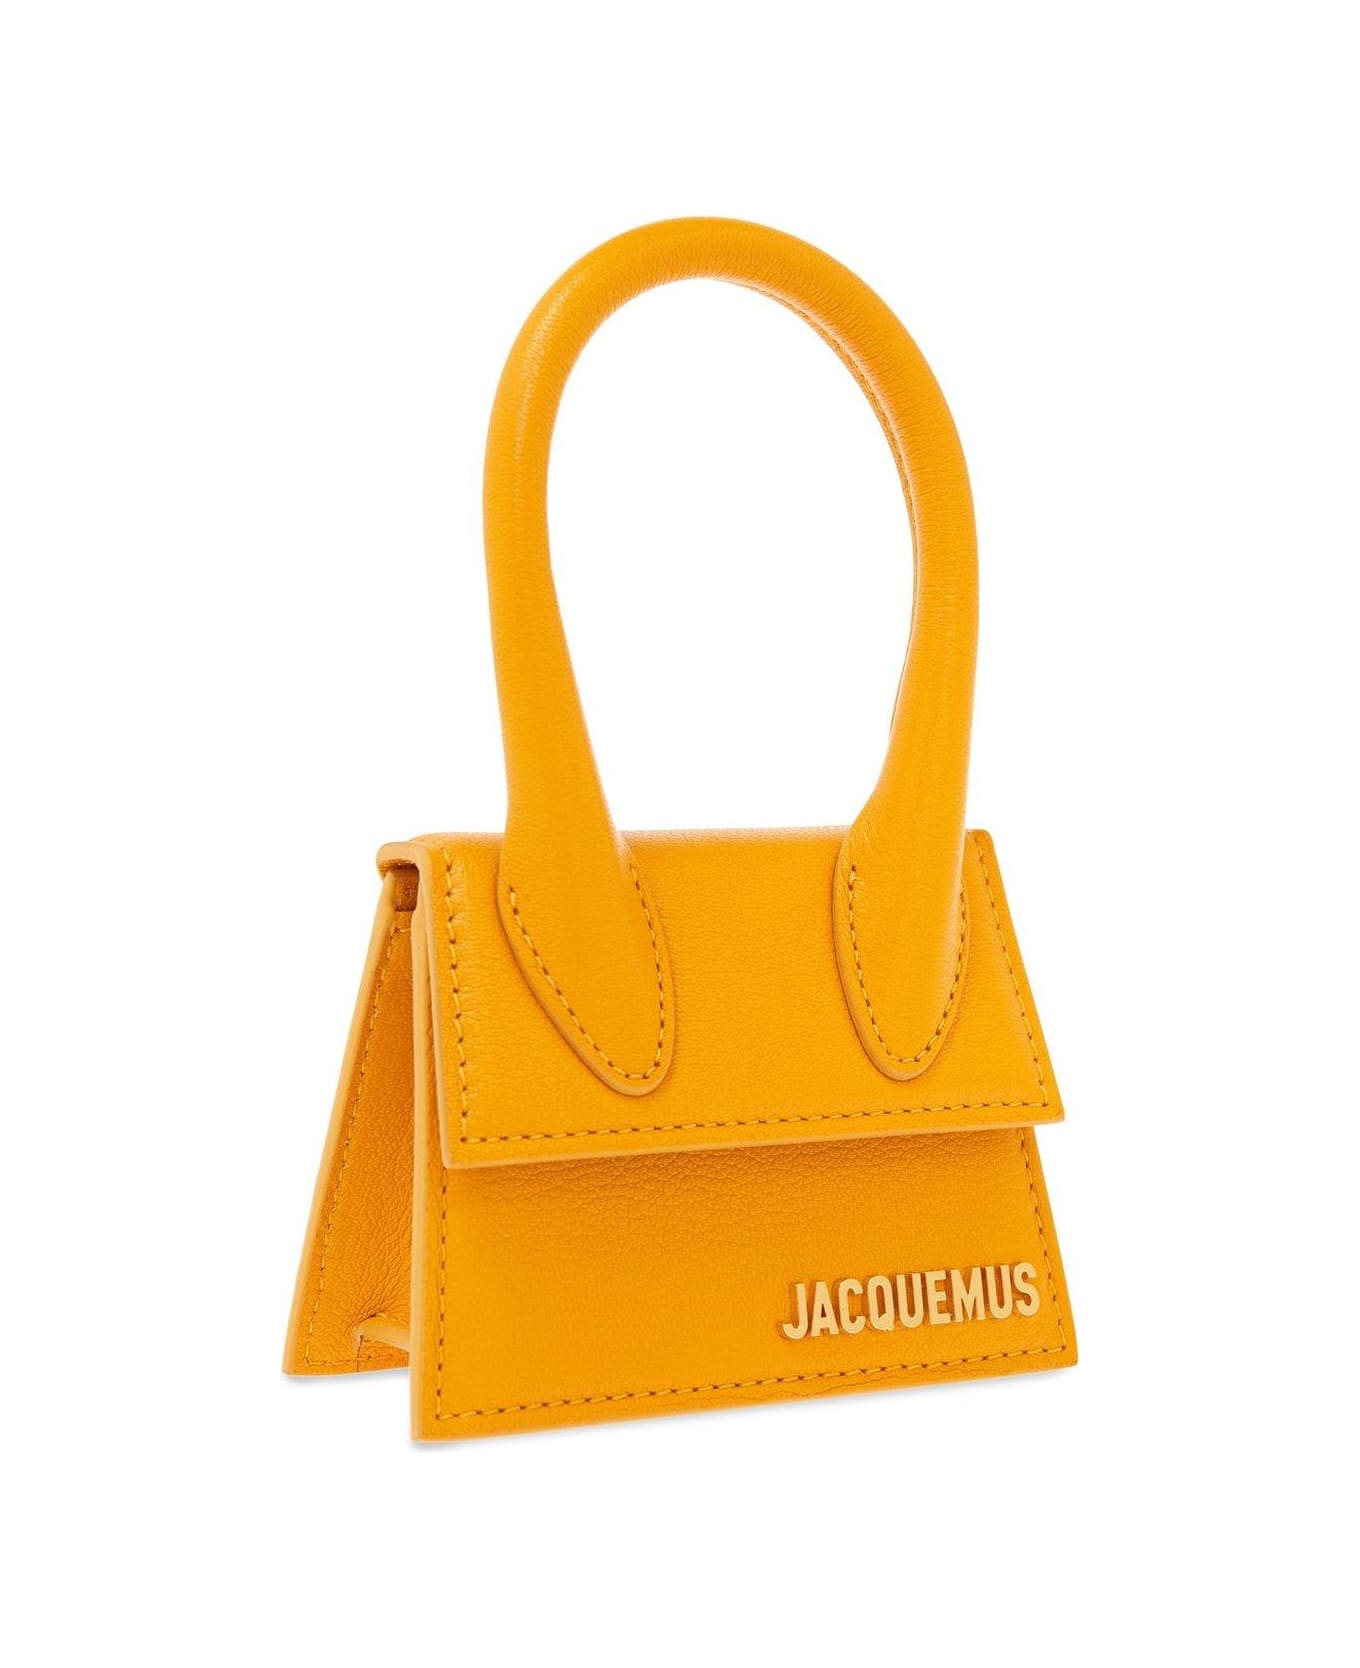 Jacquemus Le Chiquito Signature Handbag - ORANGE